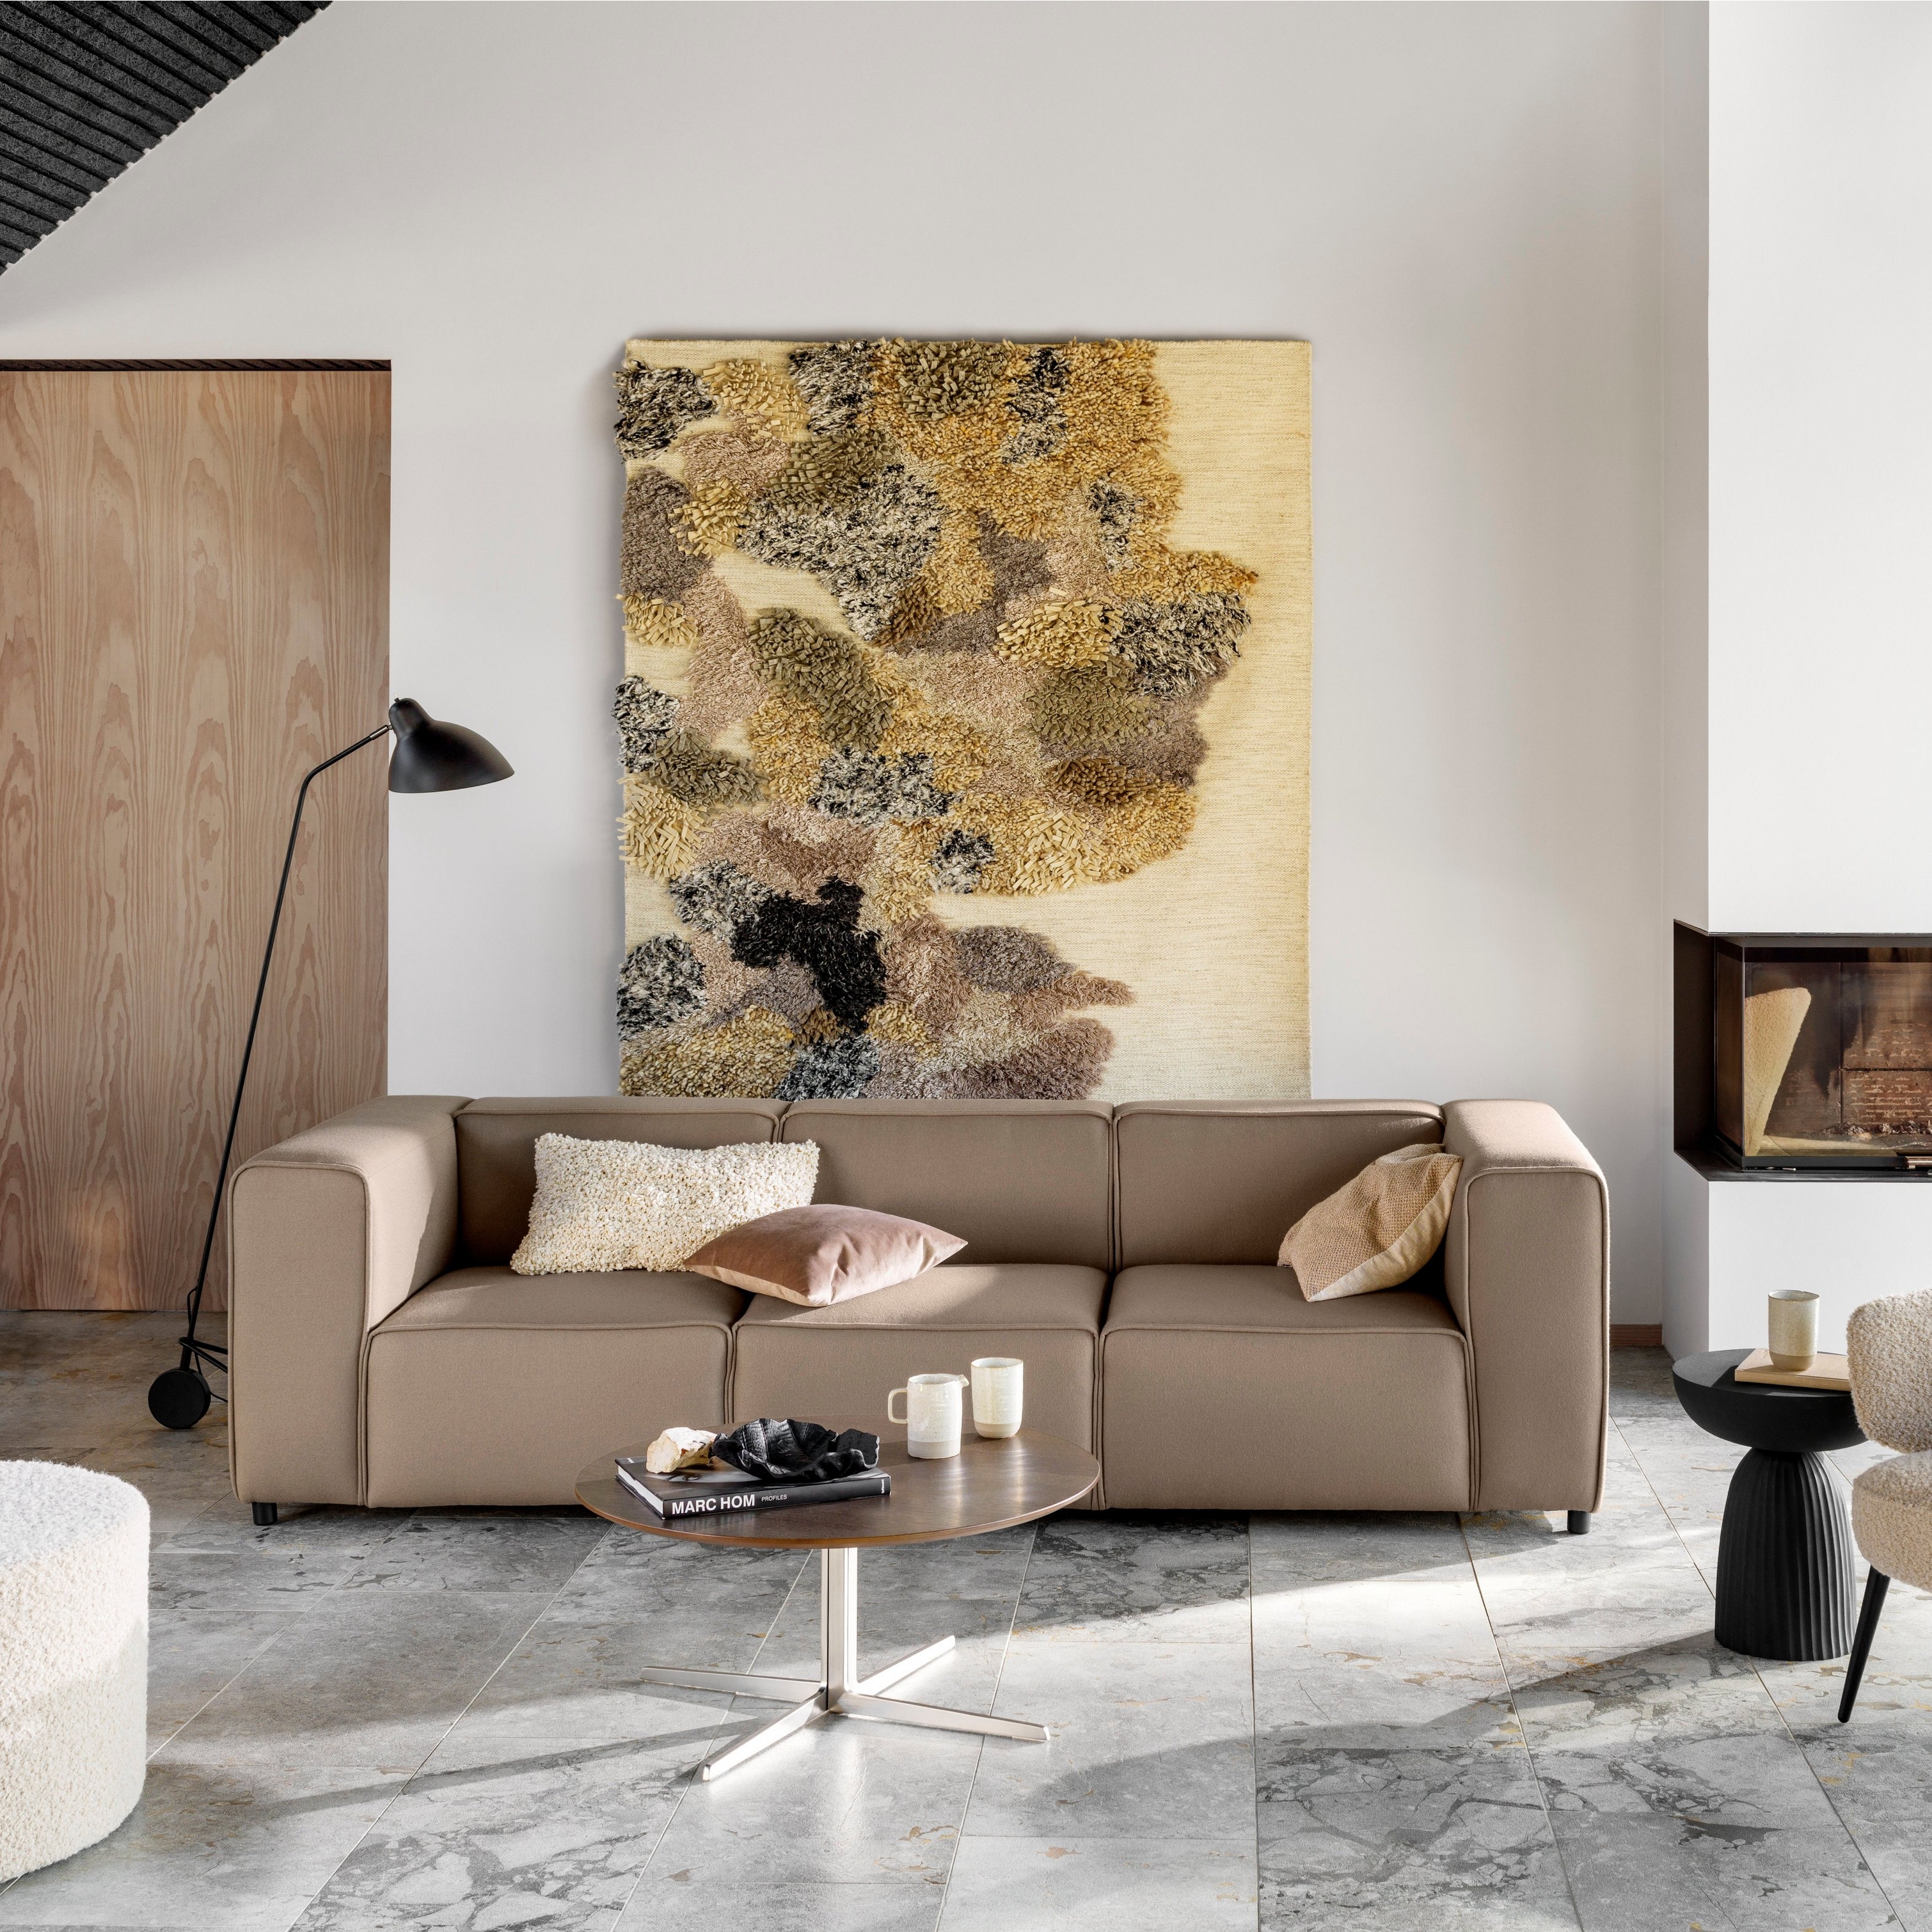 Wohnzimmer mit Sofa, Stuhl, Kunstobjekt, Kamin, Stehlampe und Marmorboden.